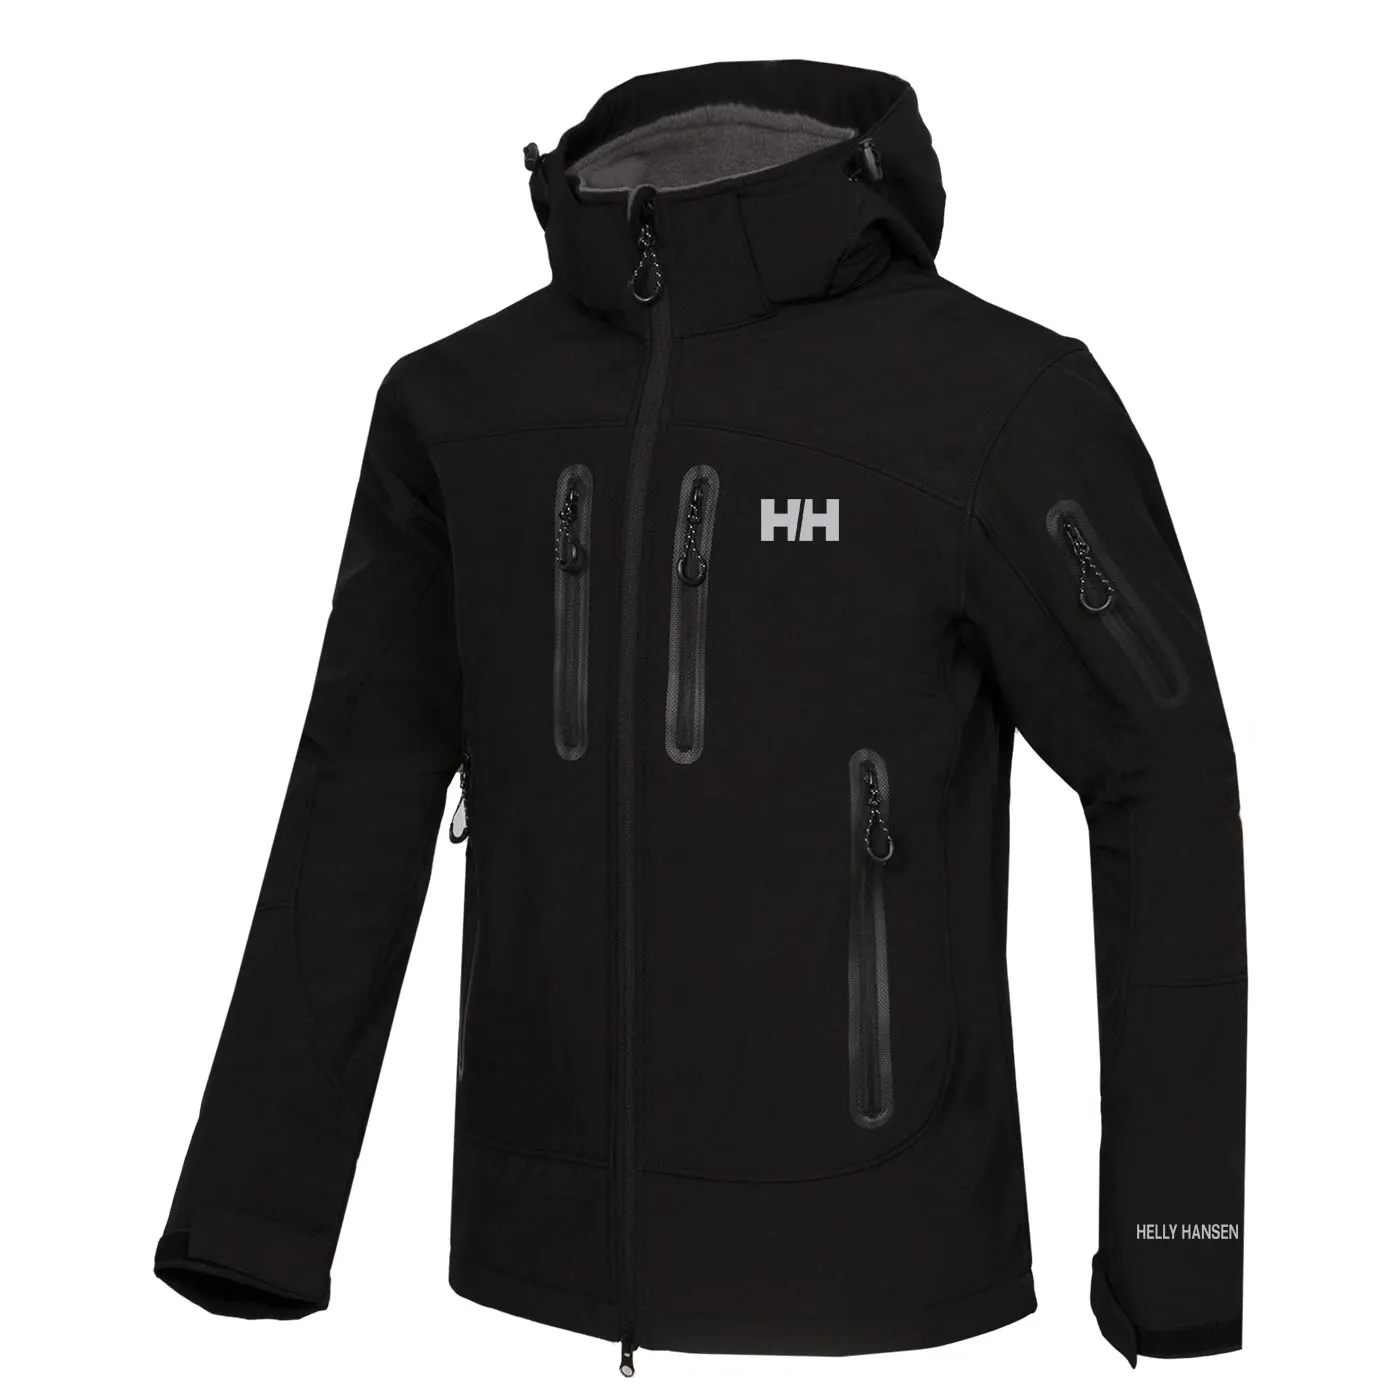 2020 новые мужские куртки толстовки мода повседневная теплая ветрозащитная лыжная куртка для лица на открытом воздухе Denali флисовые куртки костюмы S-XXL 01837 красный